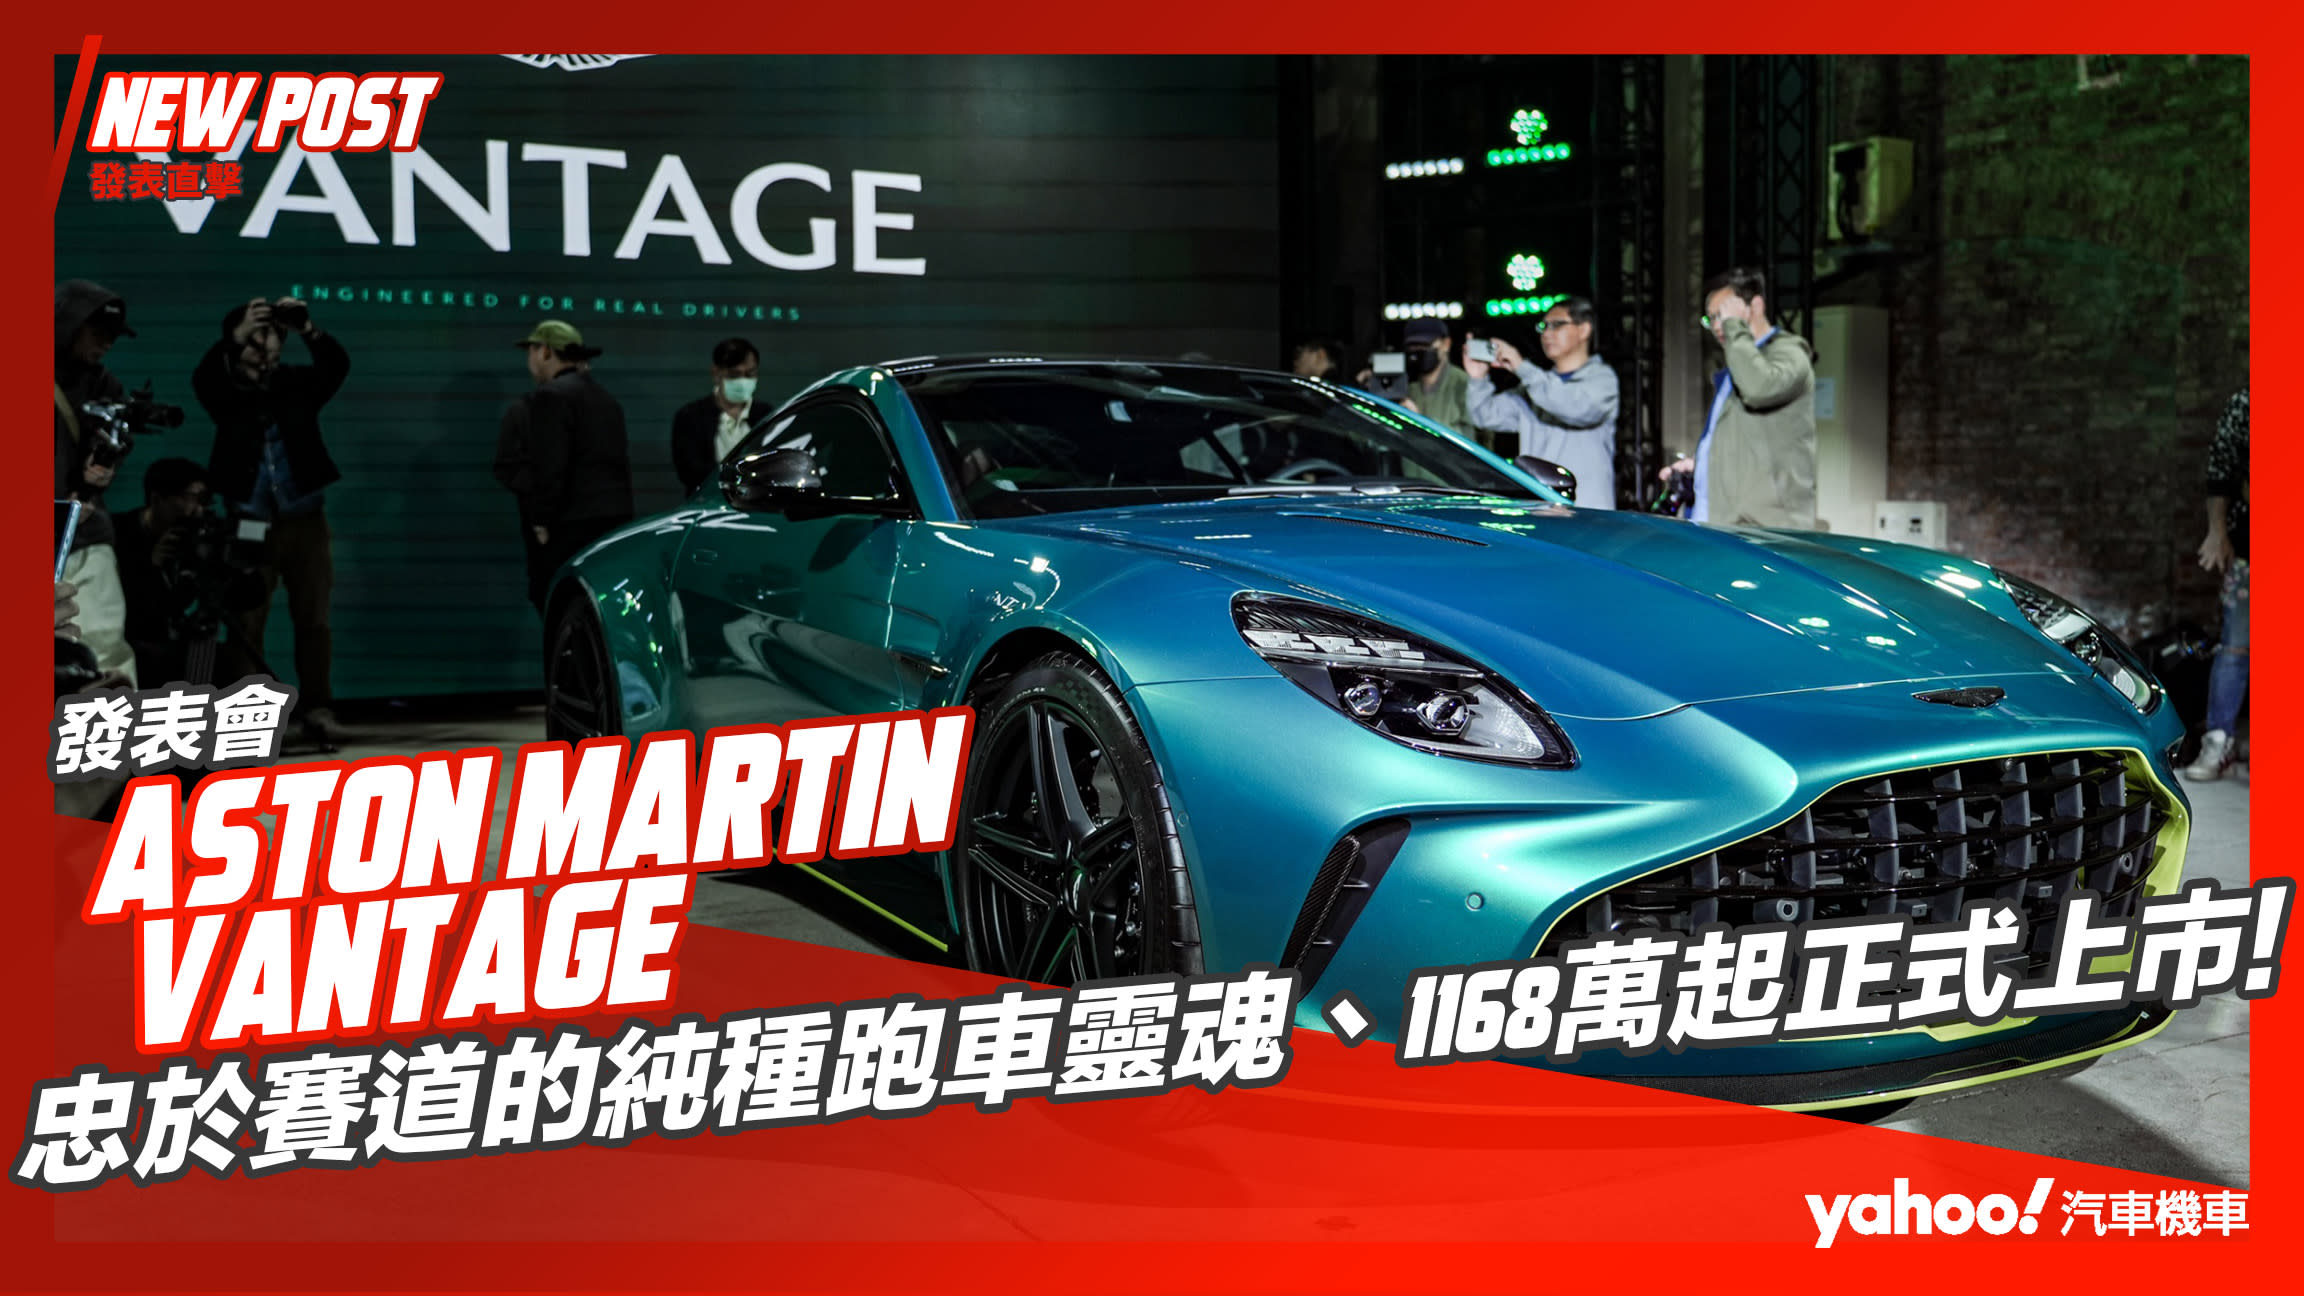 【發表直擊】Aston Martin新世代Vantage極速抵台！忠於賽道的純種跑車靈魂、1168萬起正式上市！